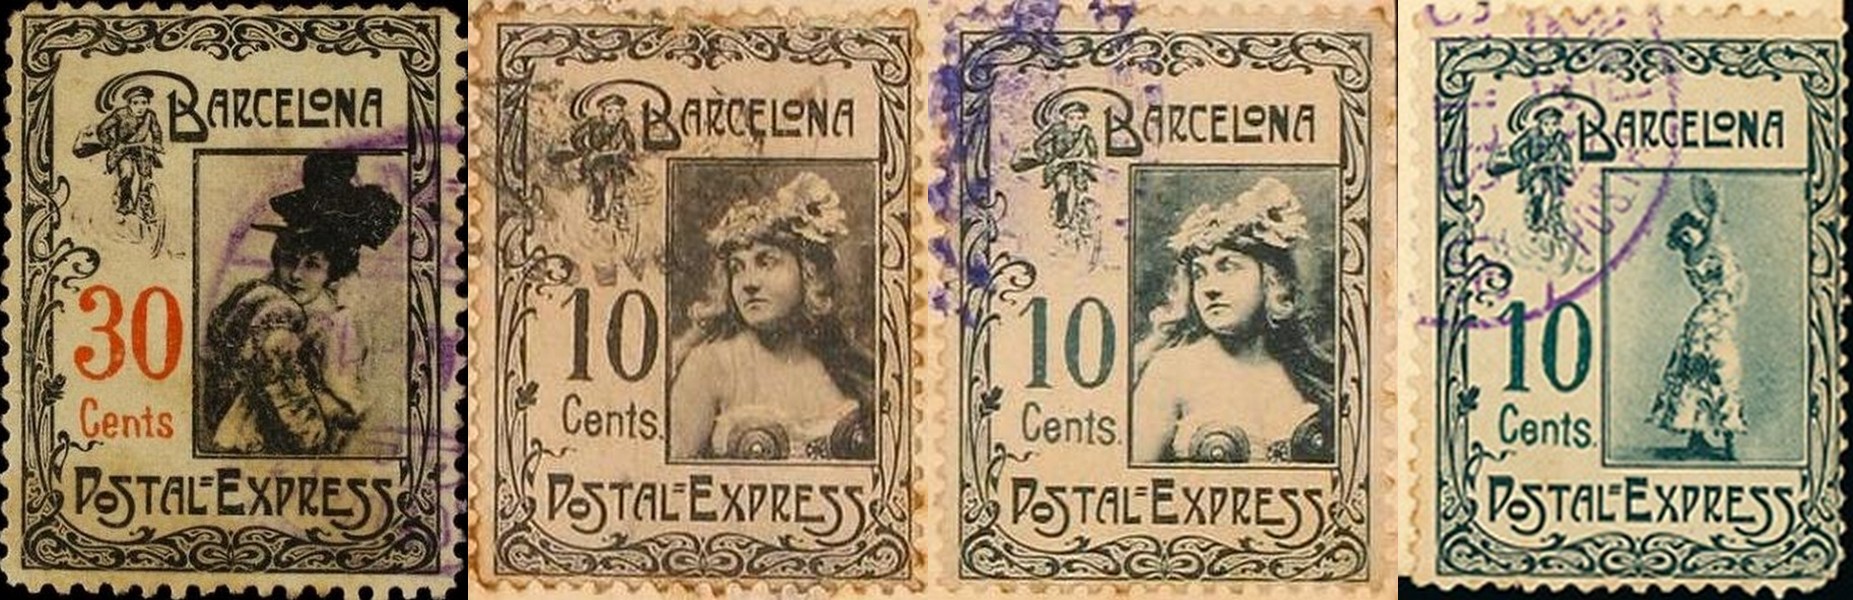 Barcelona-Postal-Express-Farbvarianten-Briefmarke-Stamp-Sello-Timbro–francobollo-Timbre-Frimærke-Postzegel-Známky-Poštneznamke-Znaczki